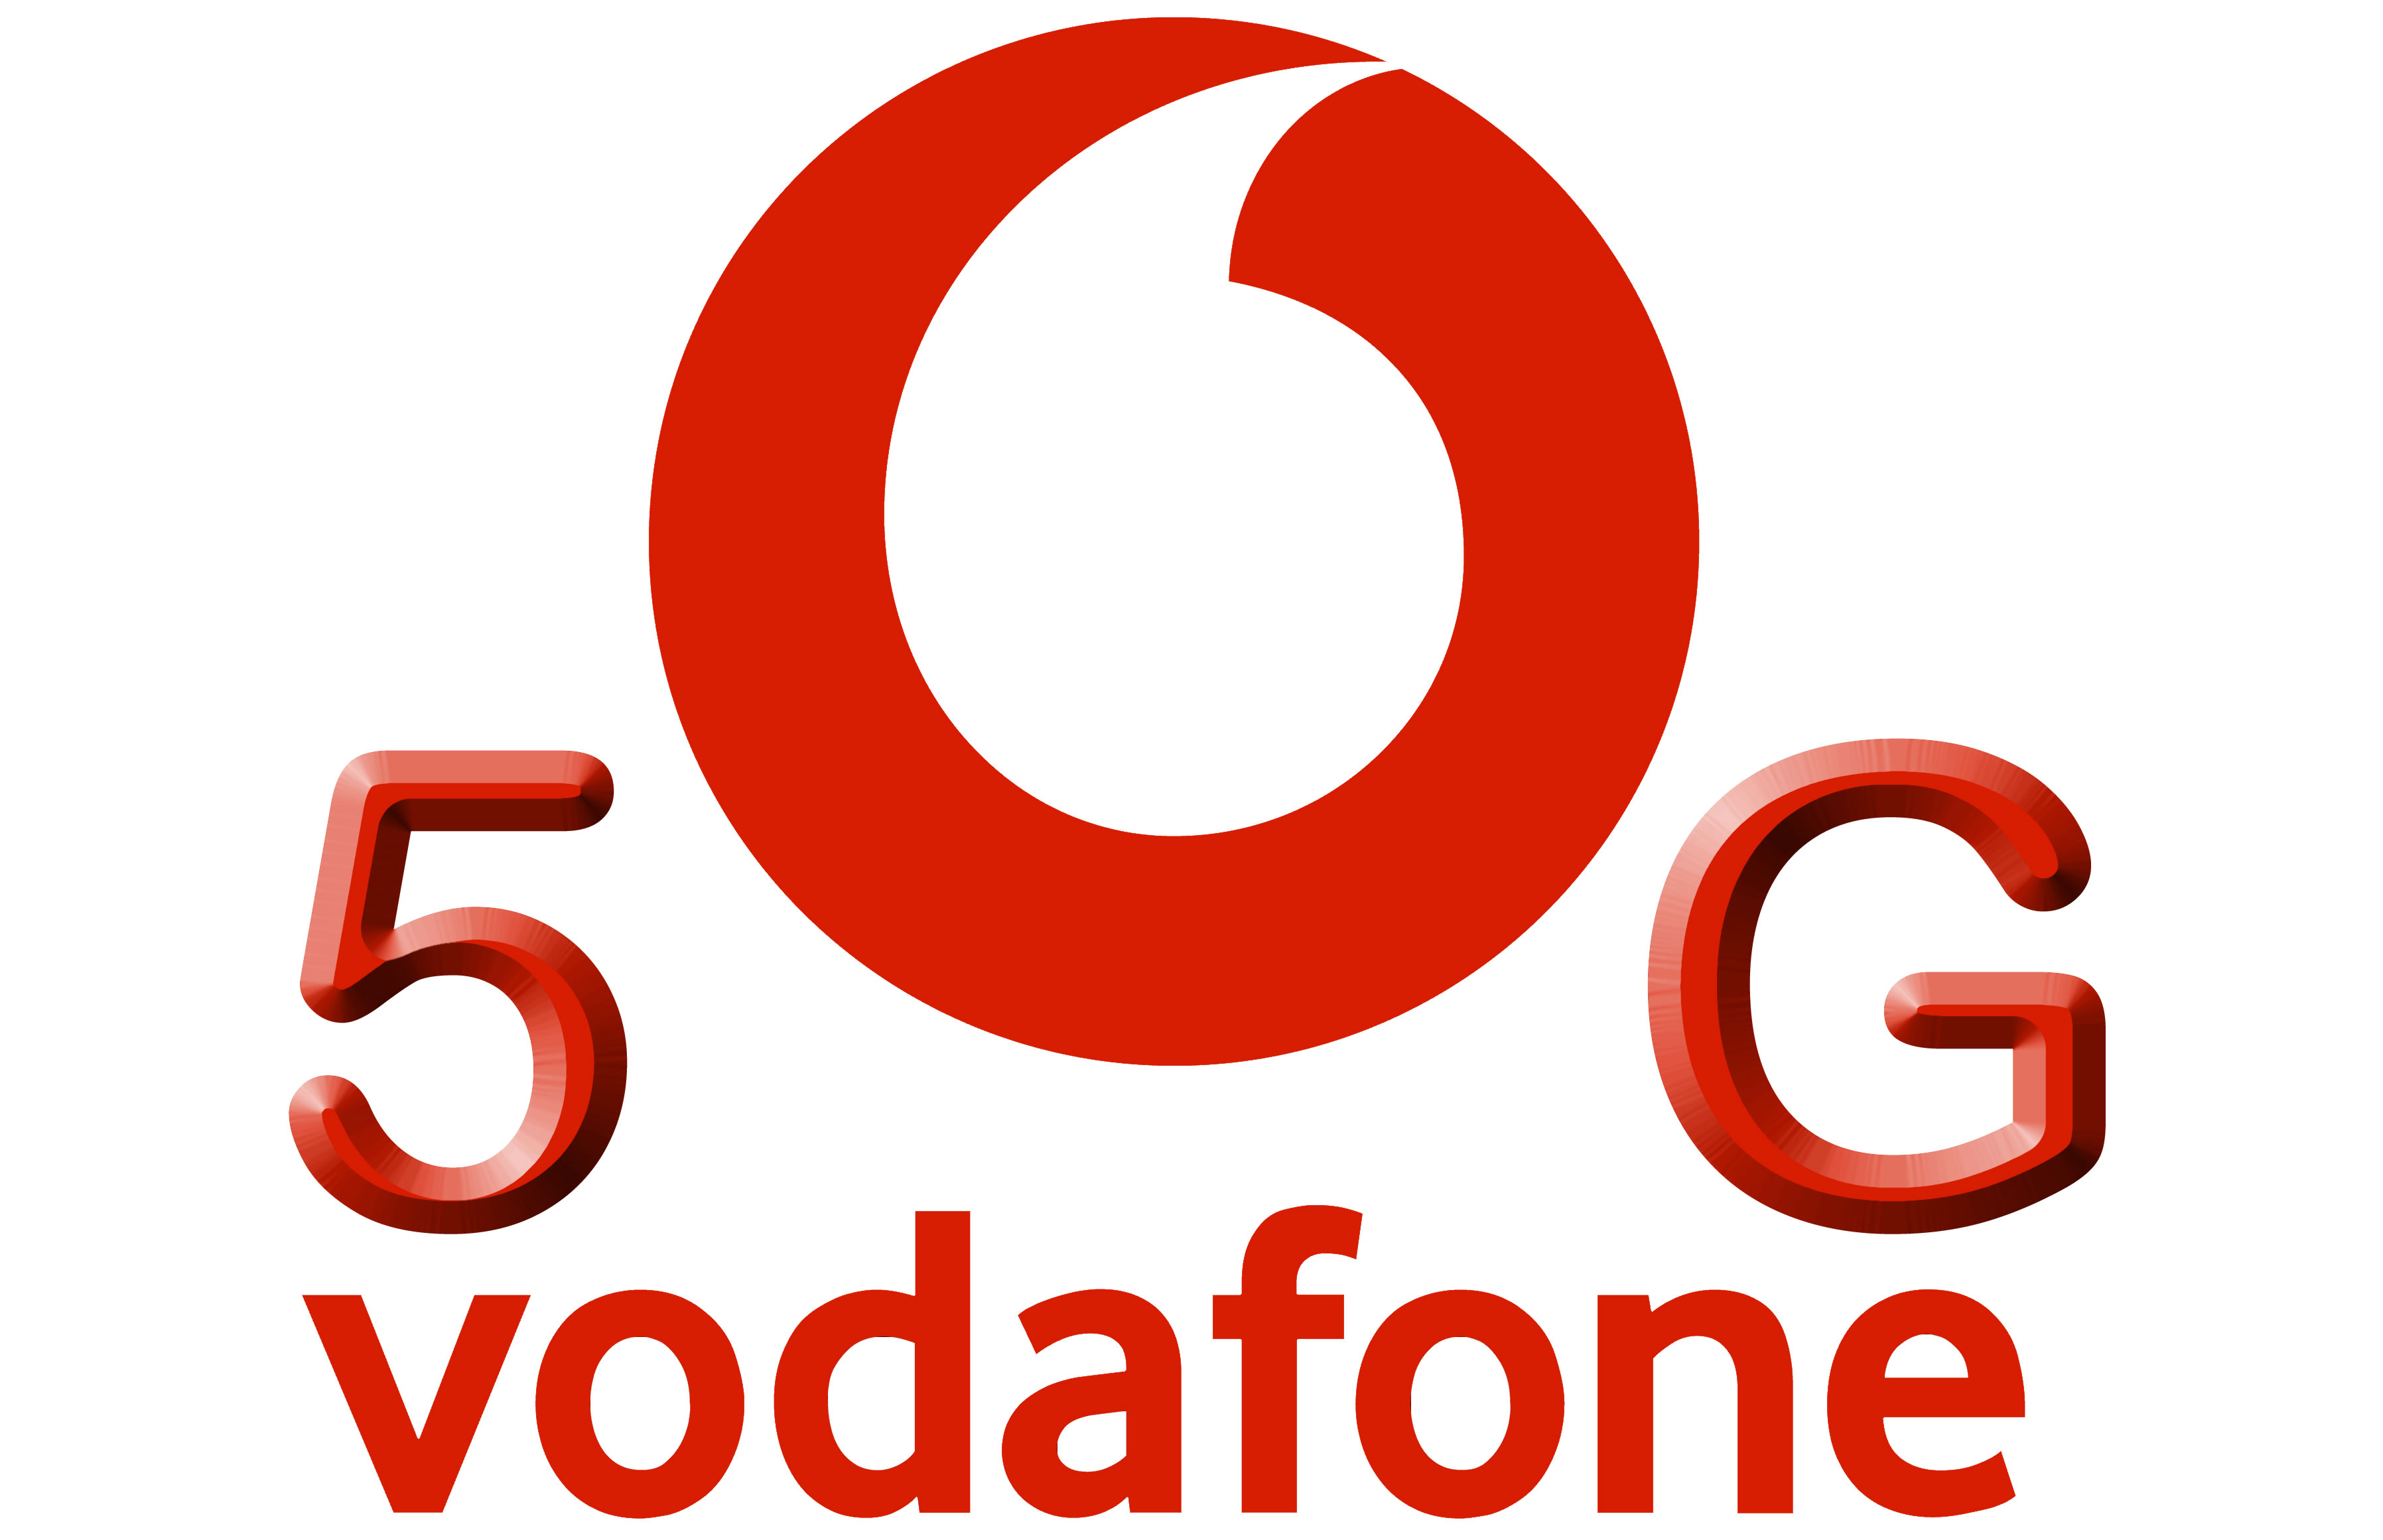 Desde el 15 de junio Vodafone Espa�a tendr� comunicaciones 5G